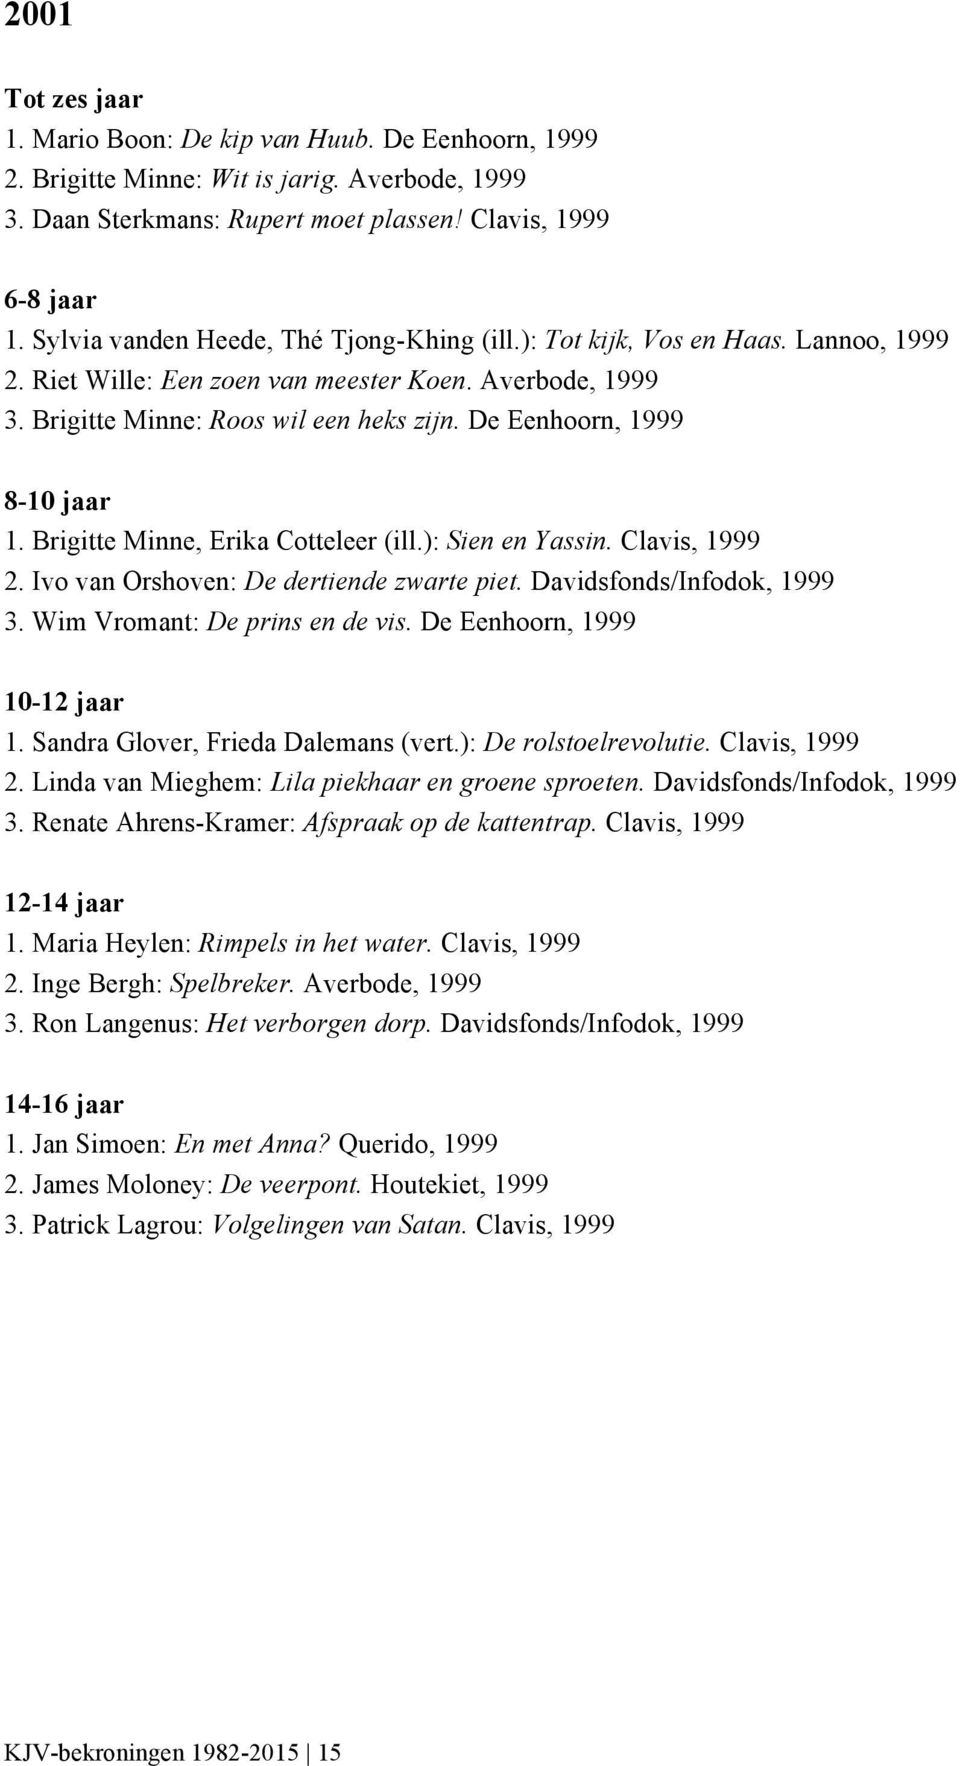 De Eenhoorn, 1999 1. Brigitte Minne, Erika Cotteleer (ill.): Sien en Yassin. Clavis, 1999 2. Ivo van Orshoven: De dertiende zwarte piet. Davidsfonds/Infodok, 1999 3. Wim Vromant: De prins en de vis.